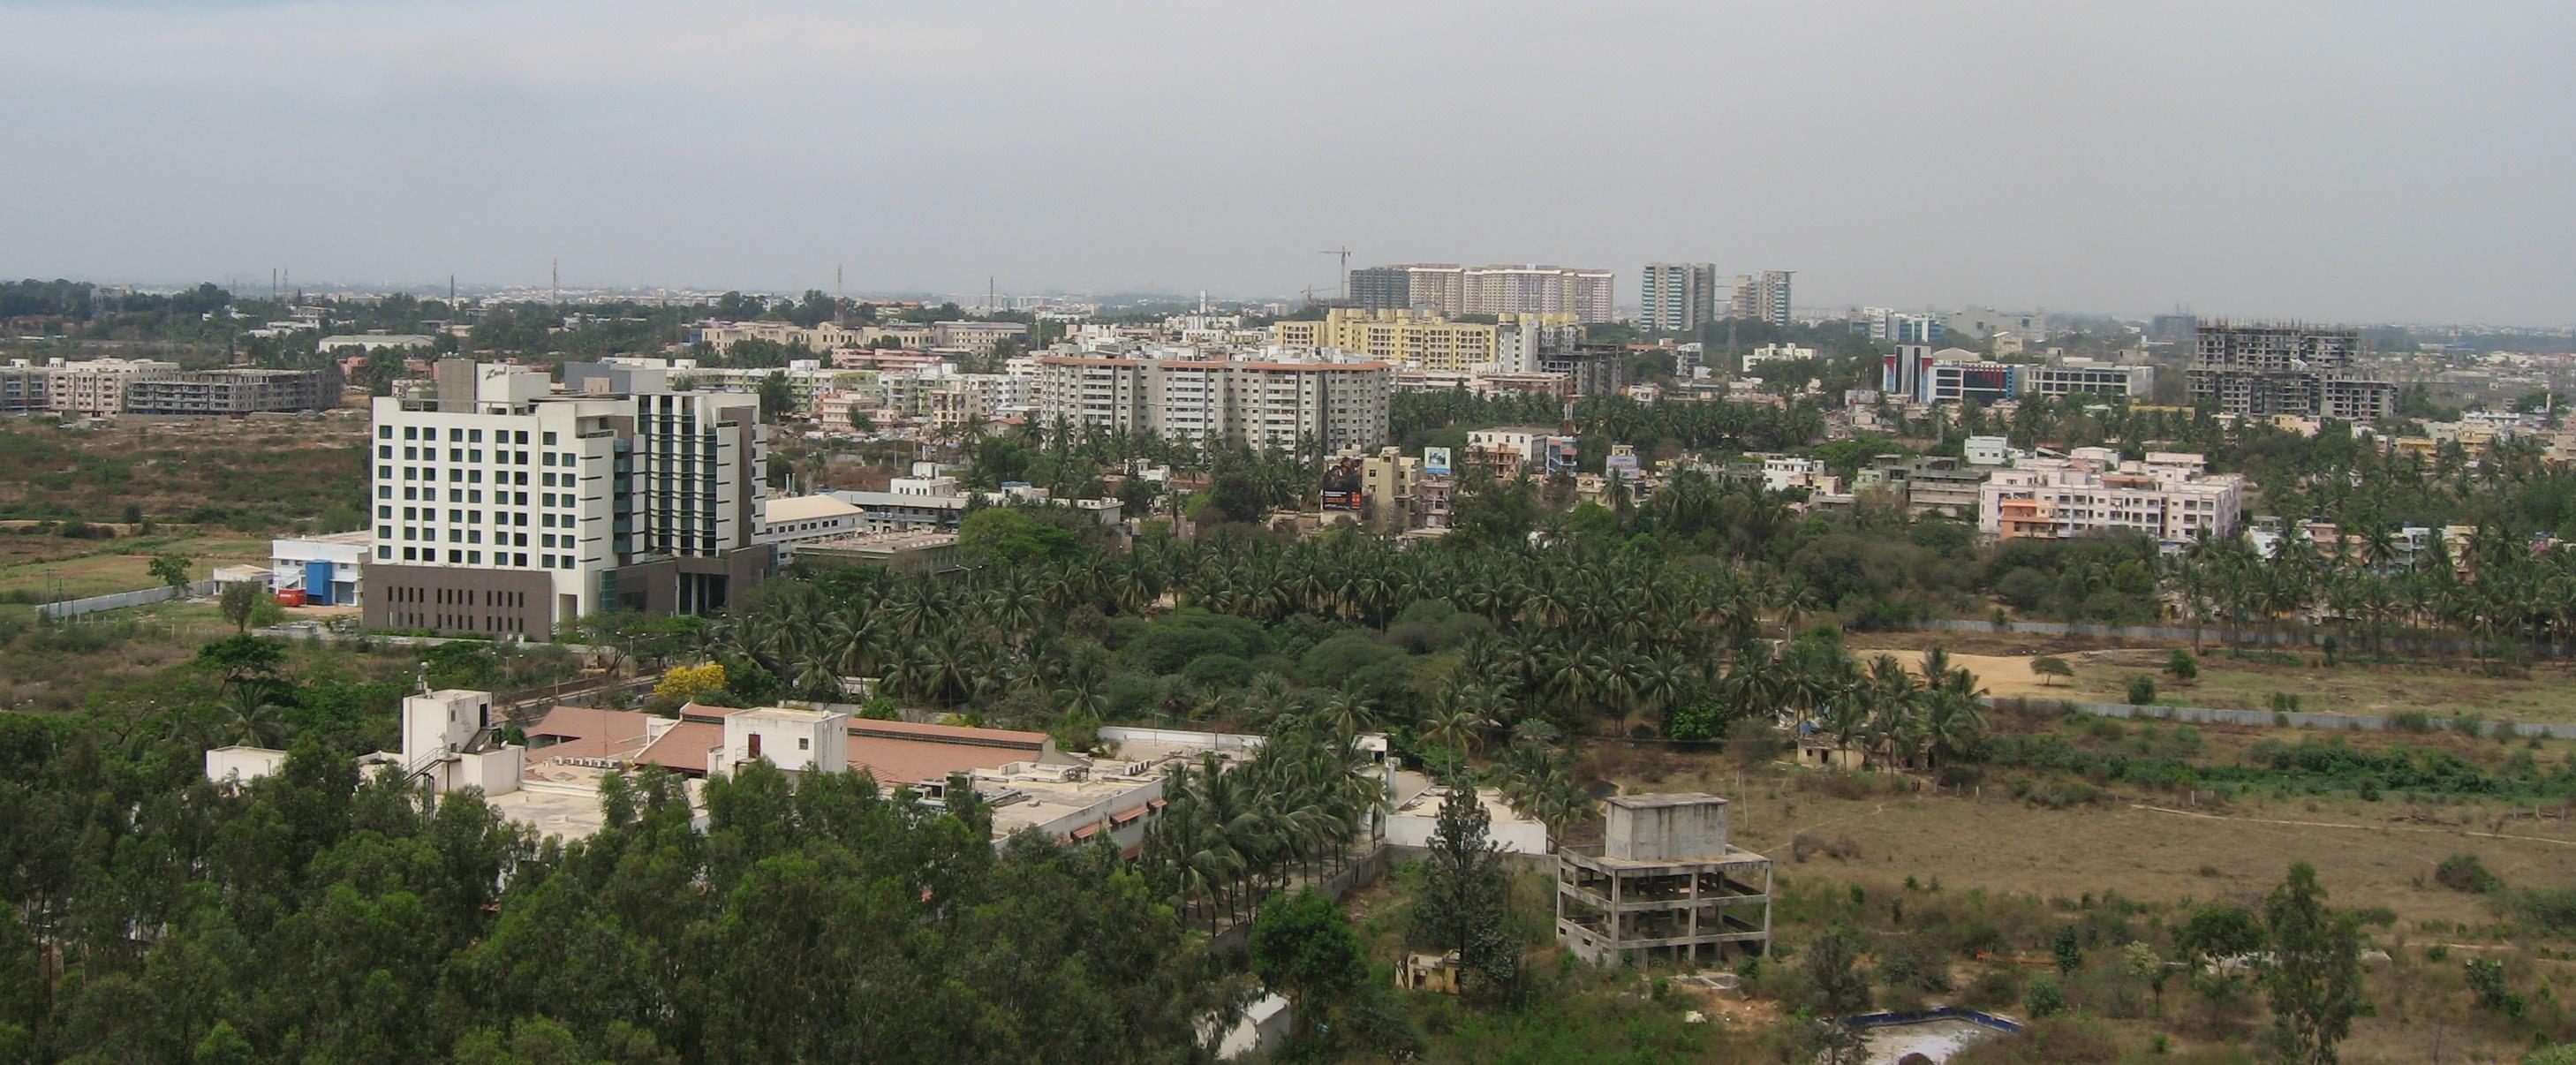 &lt;i&gt;Prestige Shantiniketan&lt;/i&gt; : la promotion d'un grand projet immobilier dans la périphérie de Bangalore